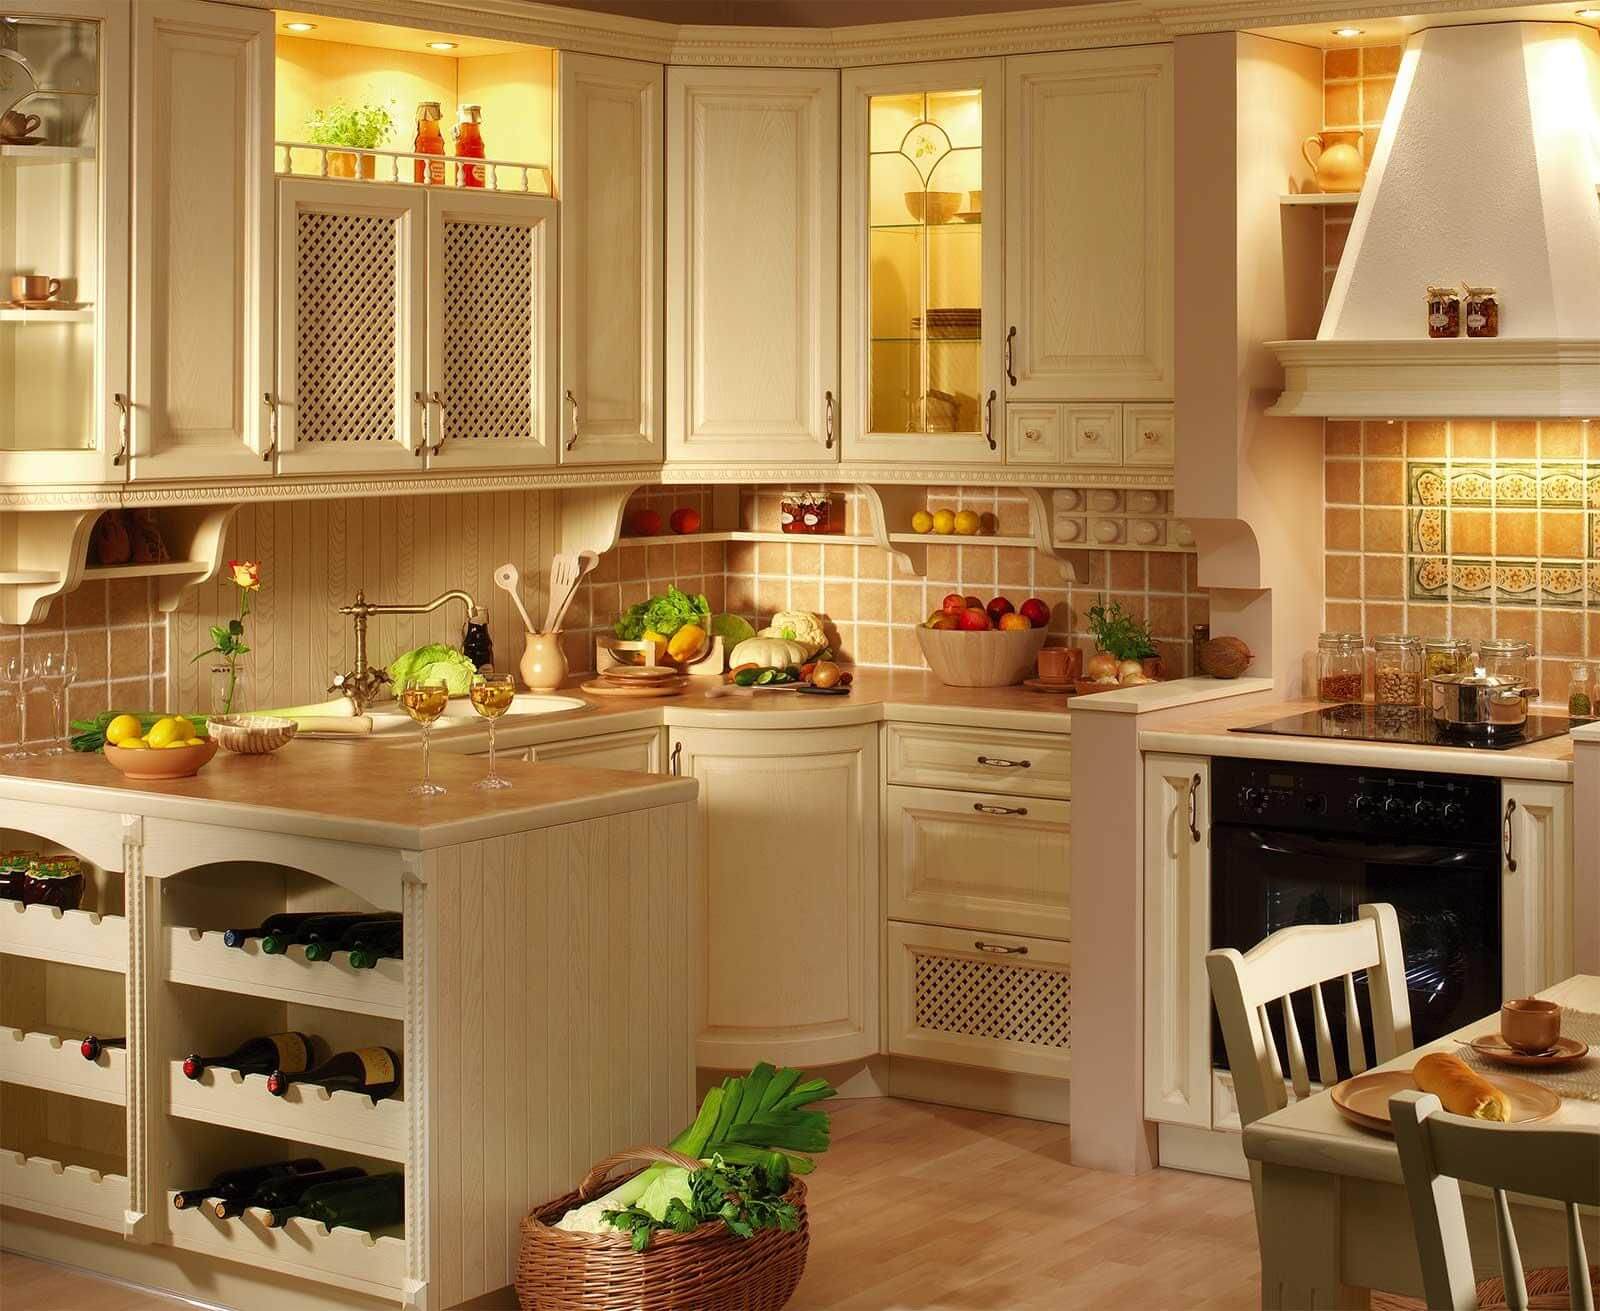  кухня: фотографии интерьера, как сделать маленькую кухню красивой